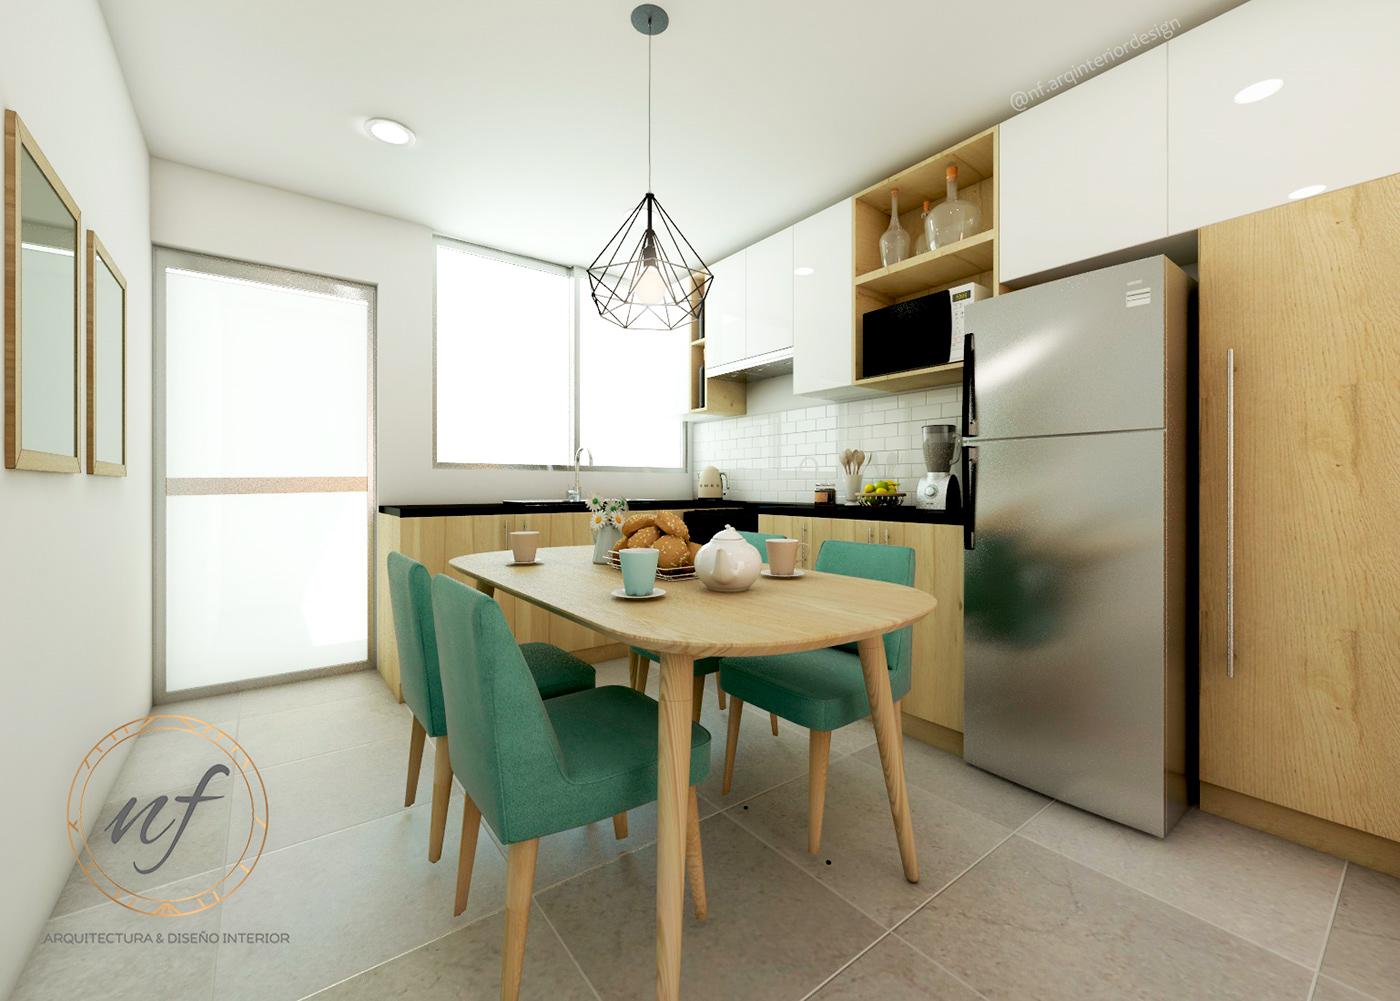 diseño interiores Interiorismo muebles diseñointerior decoracion casa hogar home projects